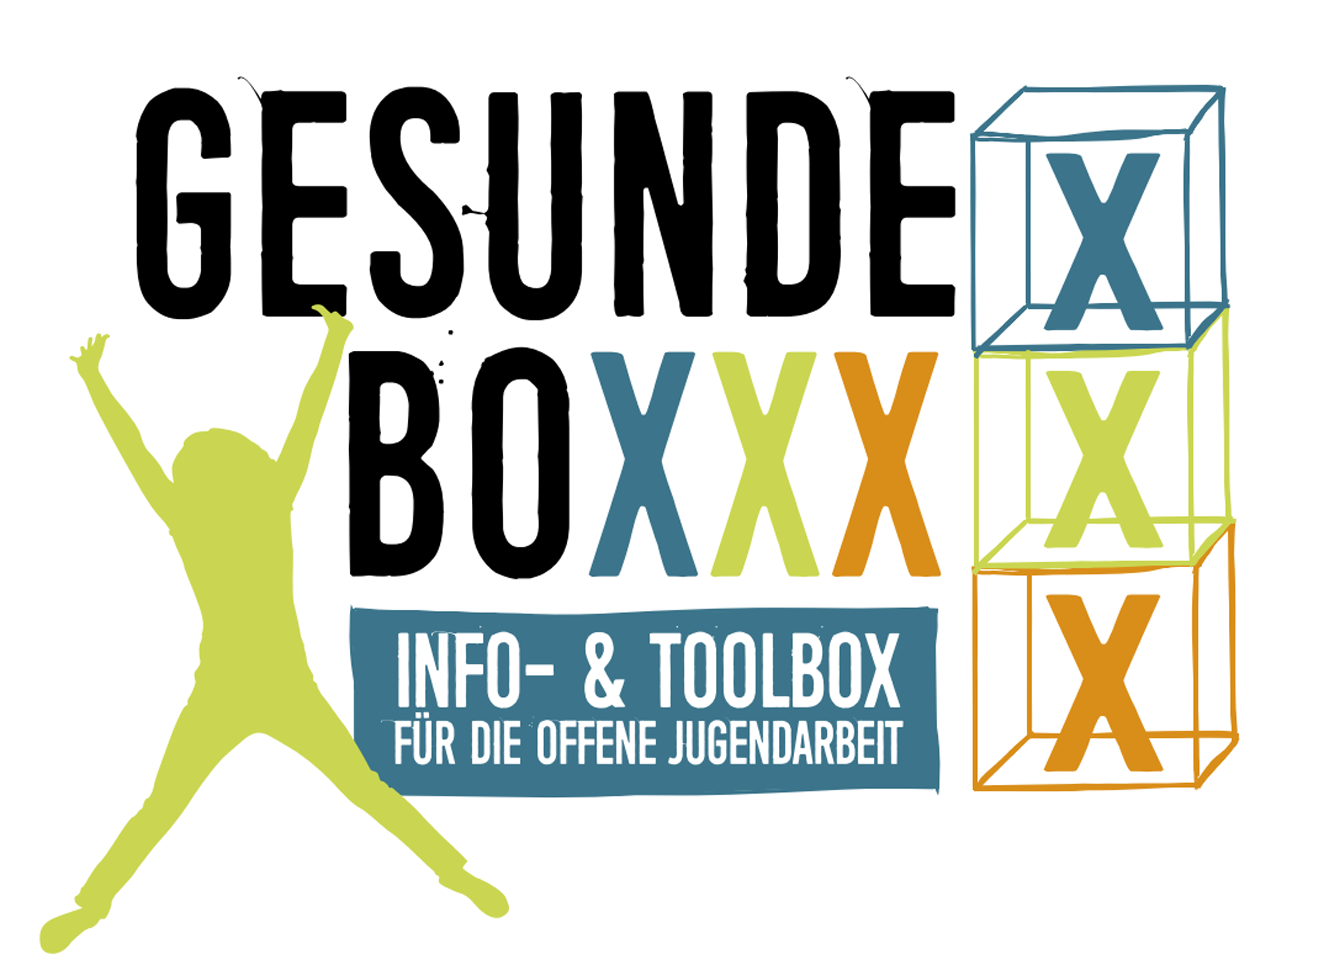 Gesunde Boxxx Logo